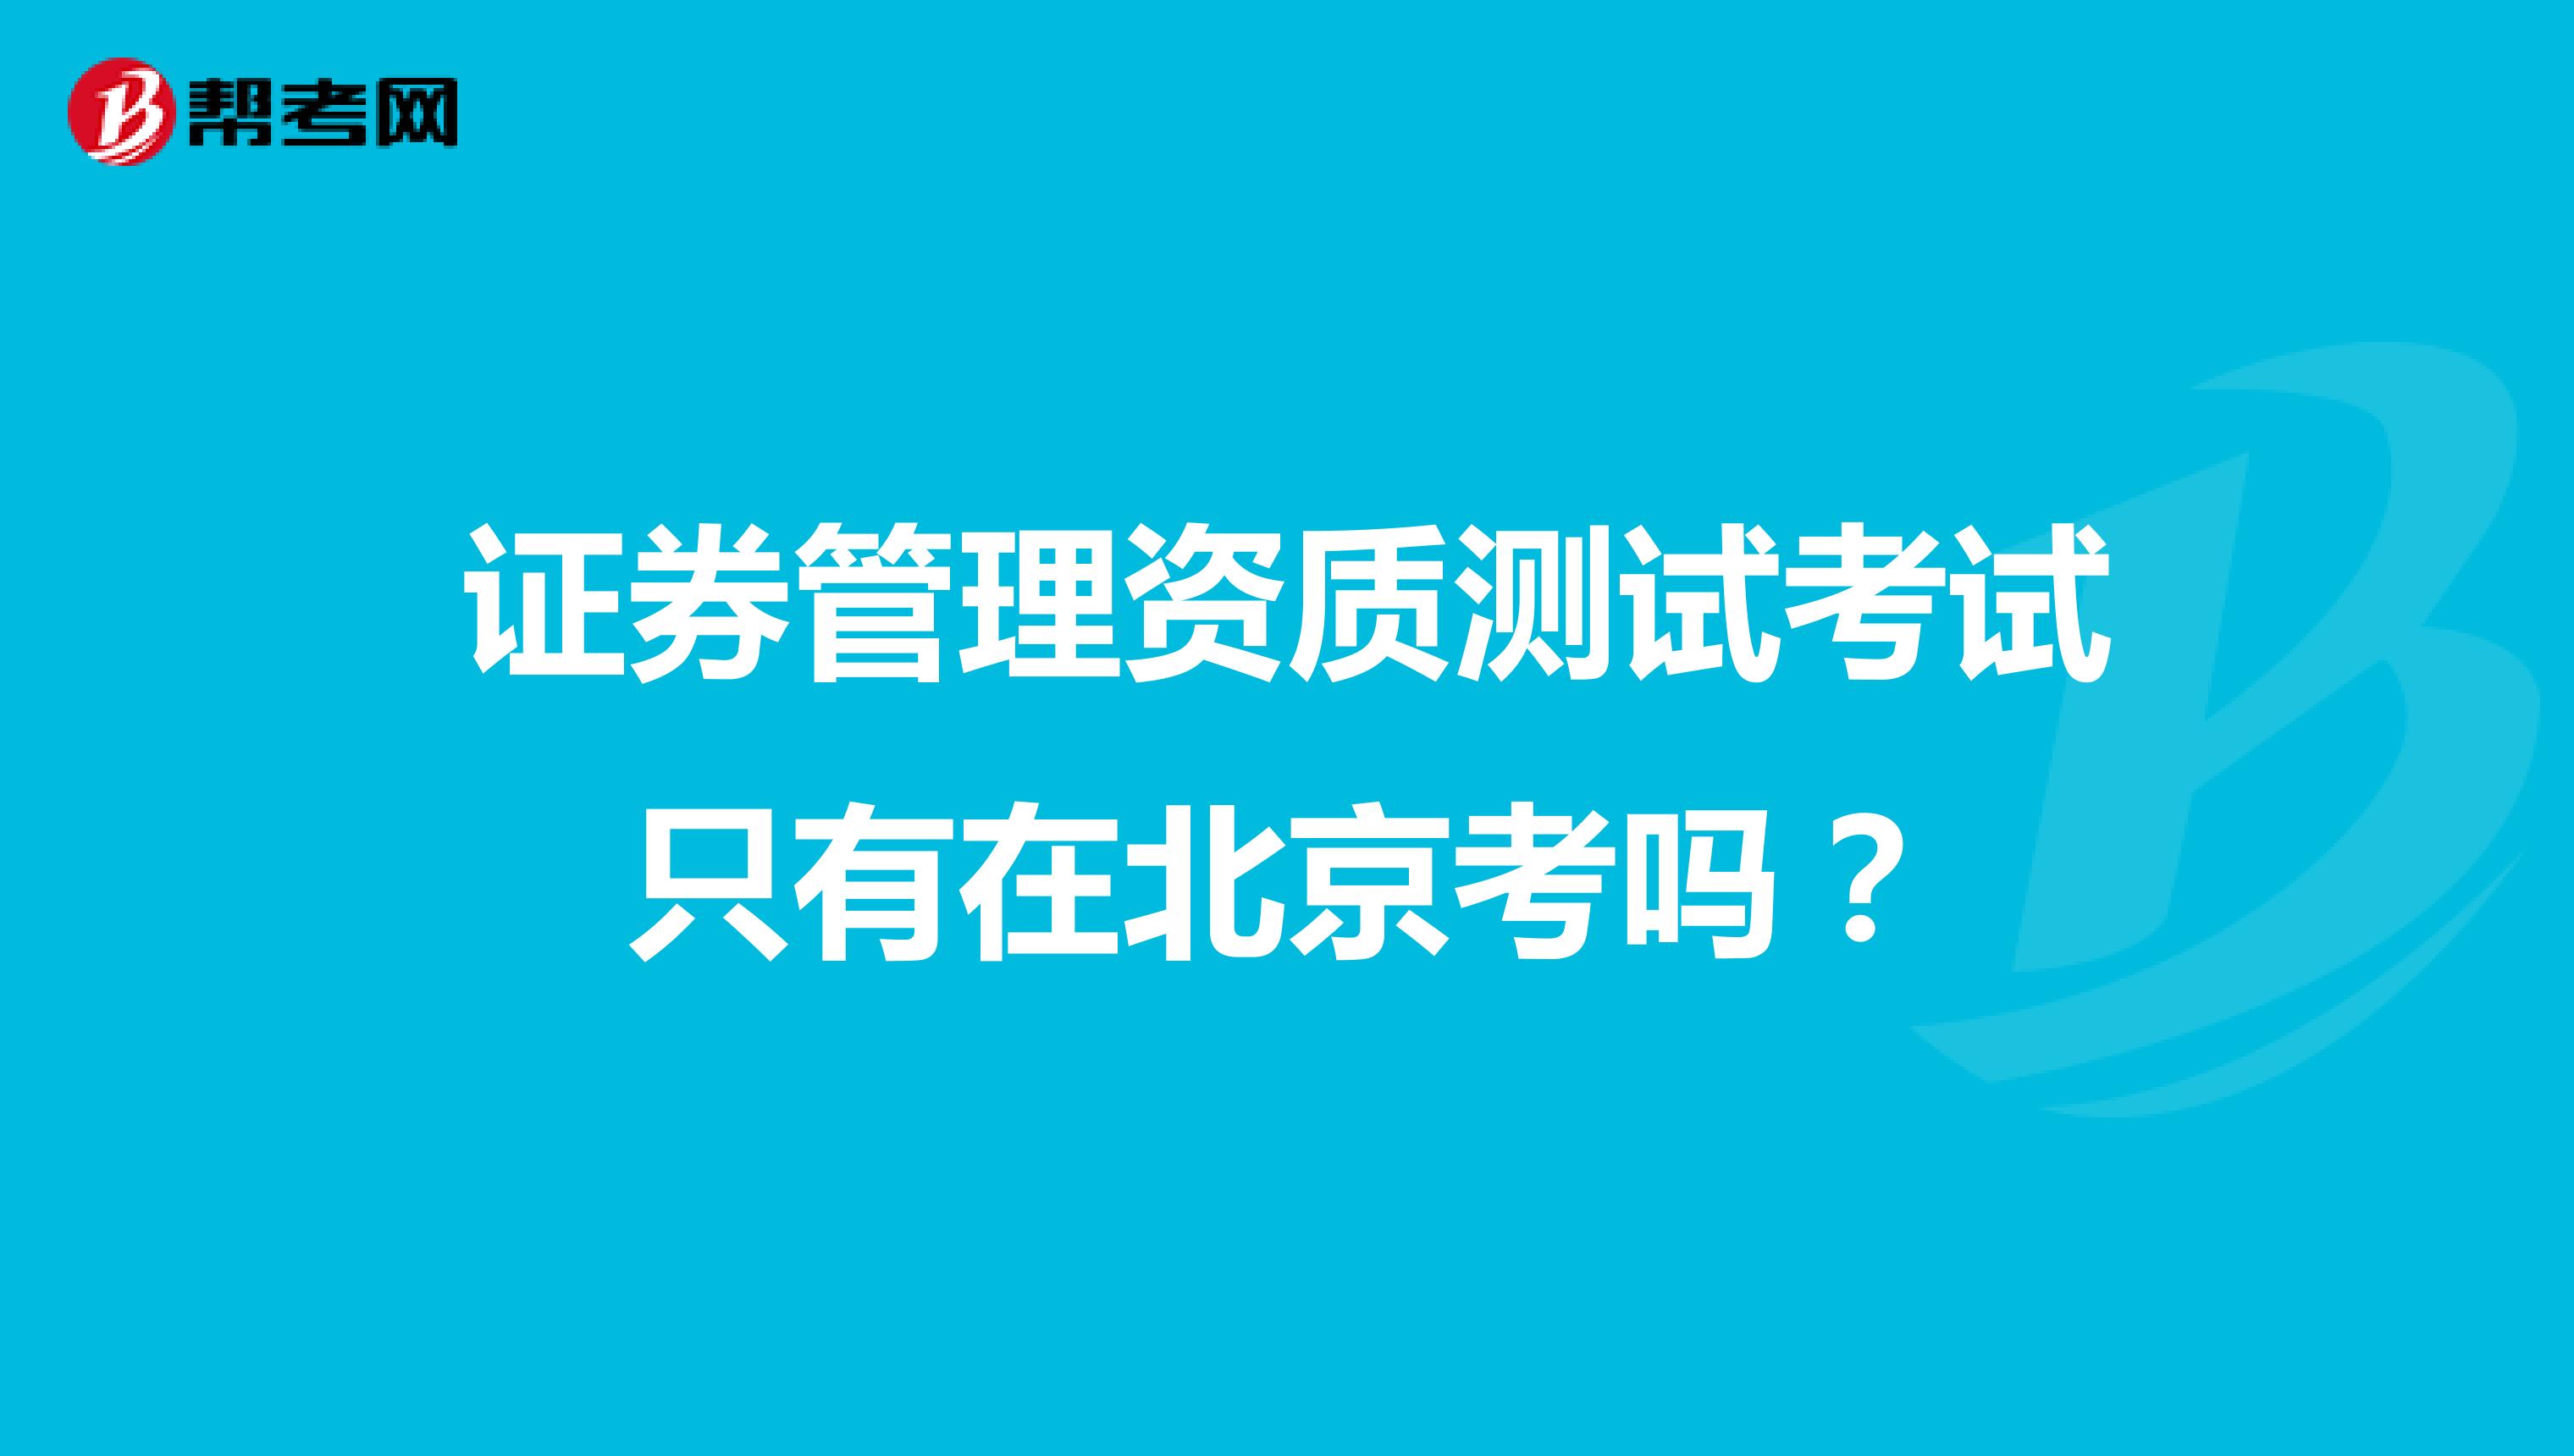 证券管理资质测试考试只有在北京考吗？